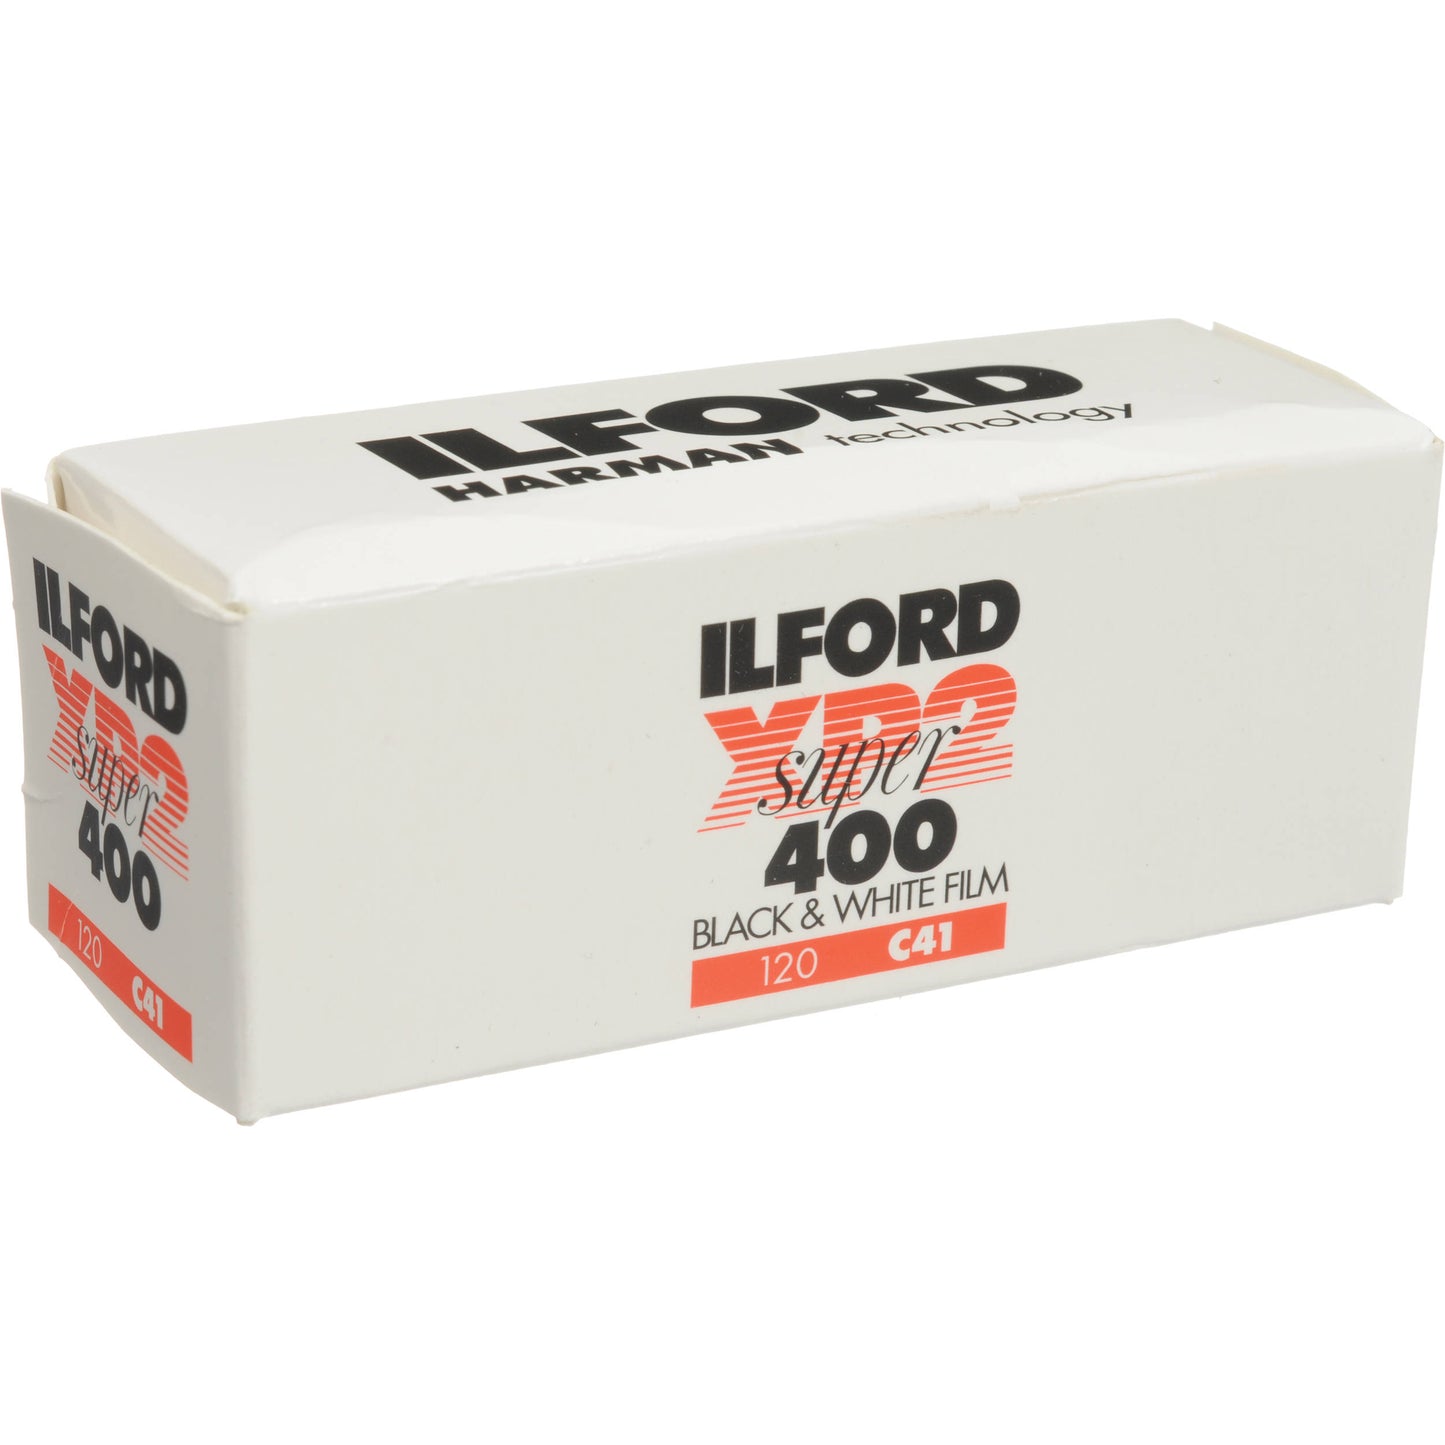 Ilford XP2 Super 400 | 120